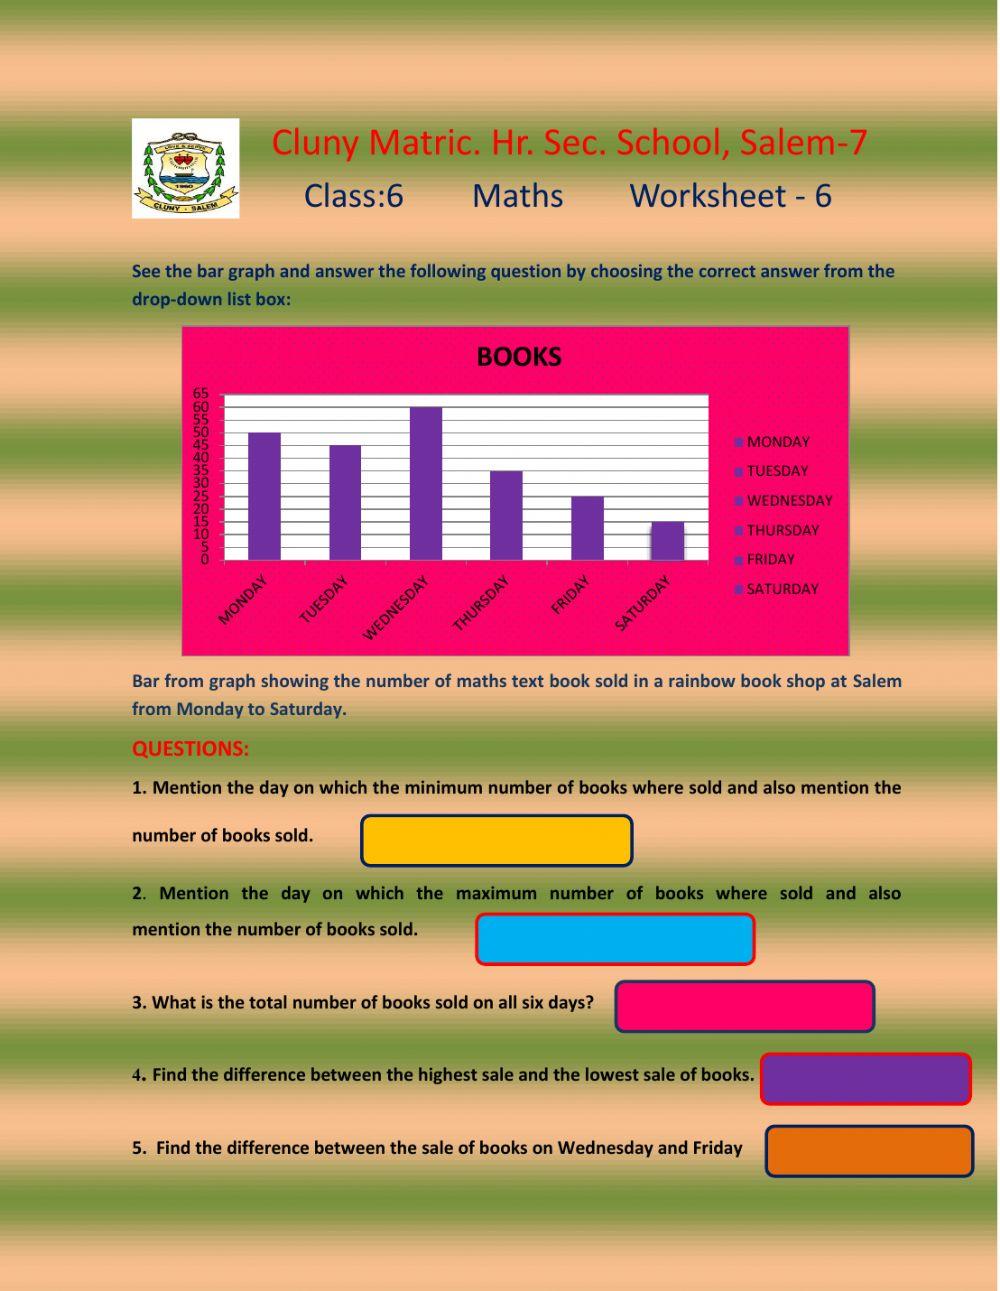 Class 6 Maths Worksheet 6